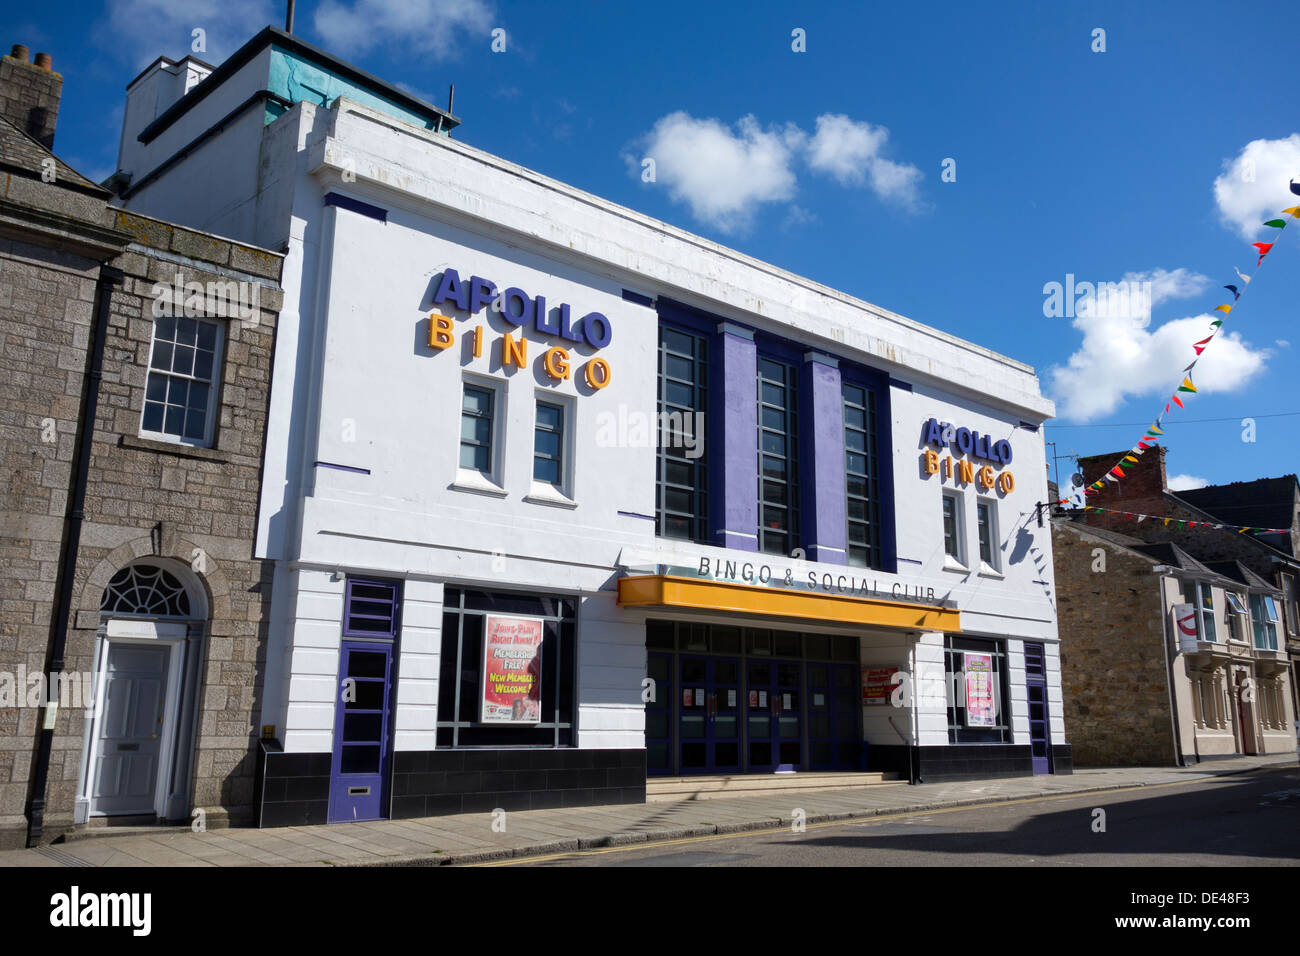 Apollo-Bingo und social Club in Camborne, Cornwall UK. Stockfoto